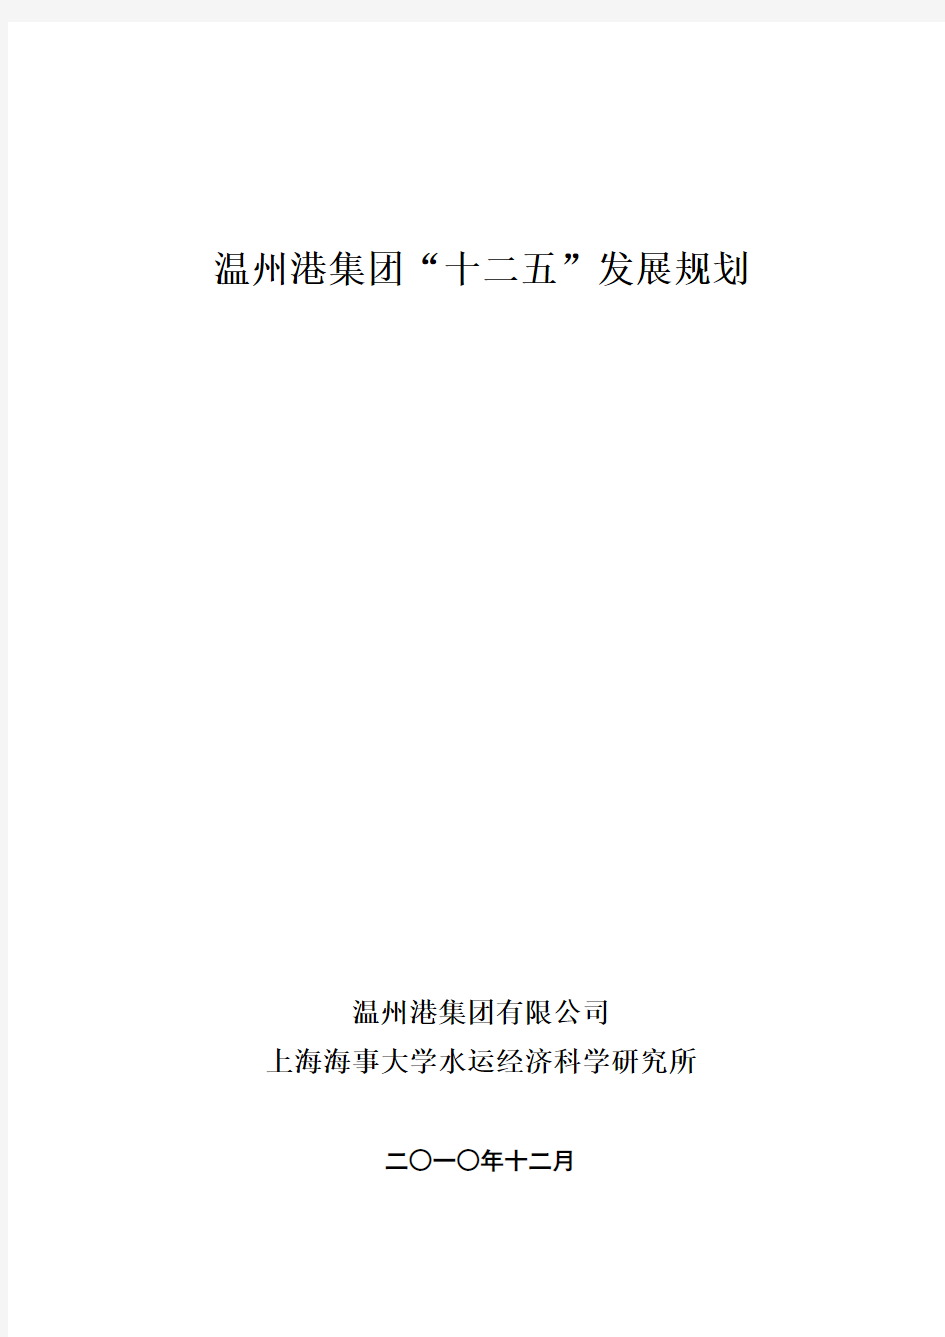 温州港集团十二五规划定稿(2011.4.15更新)